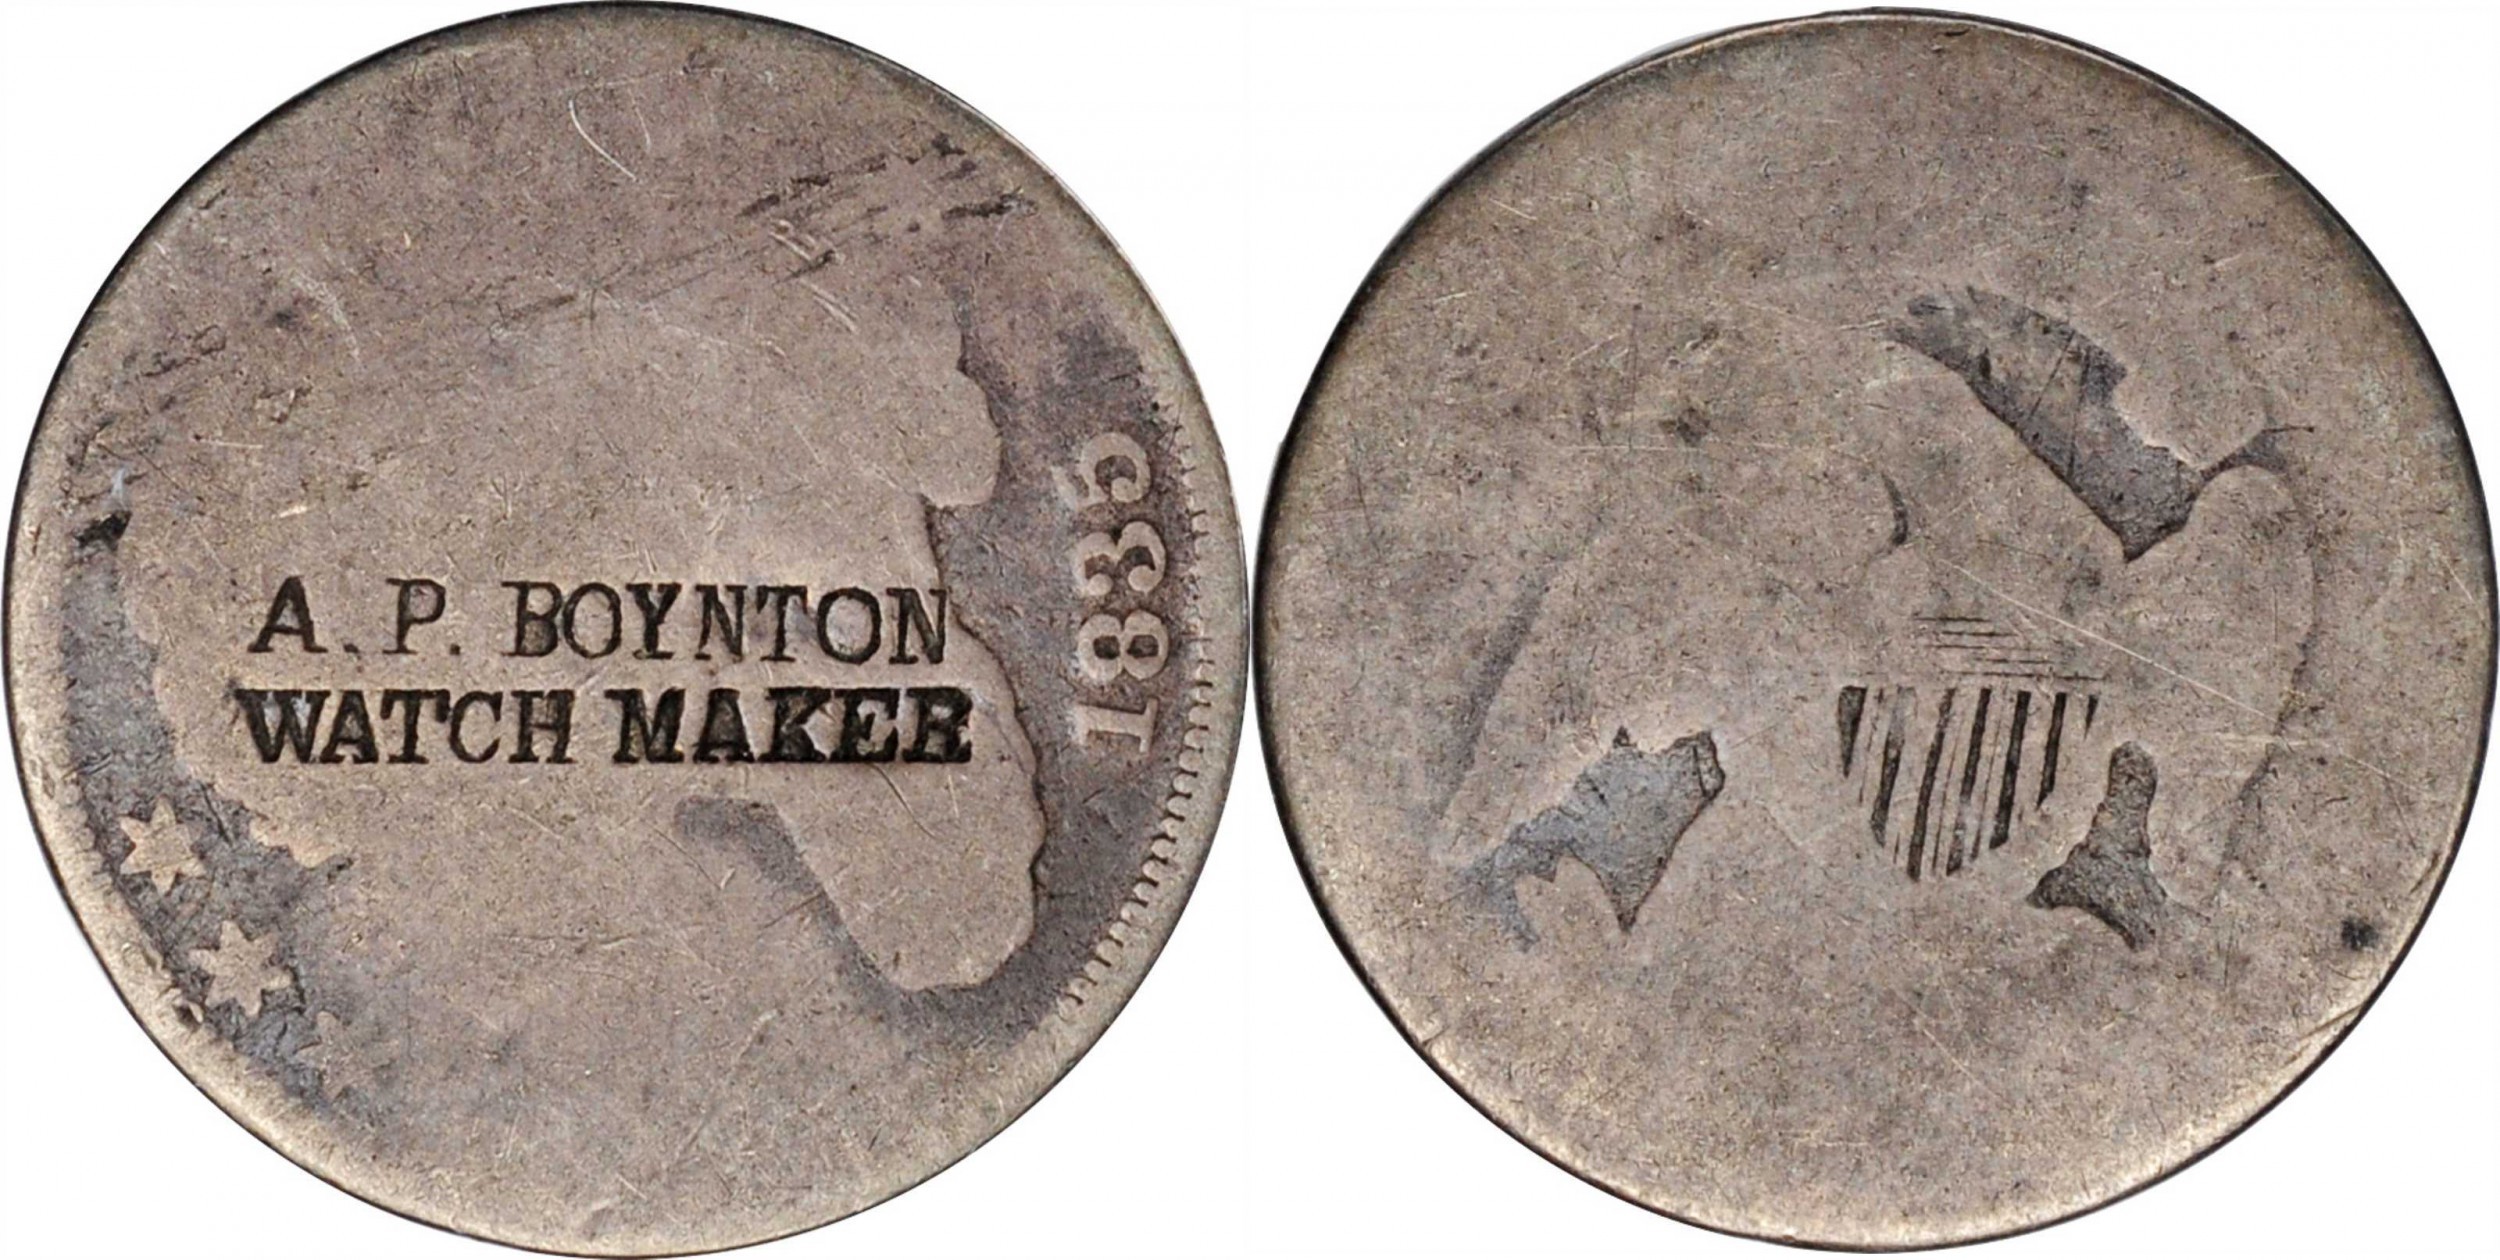 A.P Boynton Watch Maker.jpg